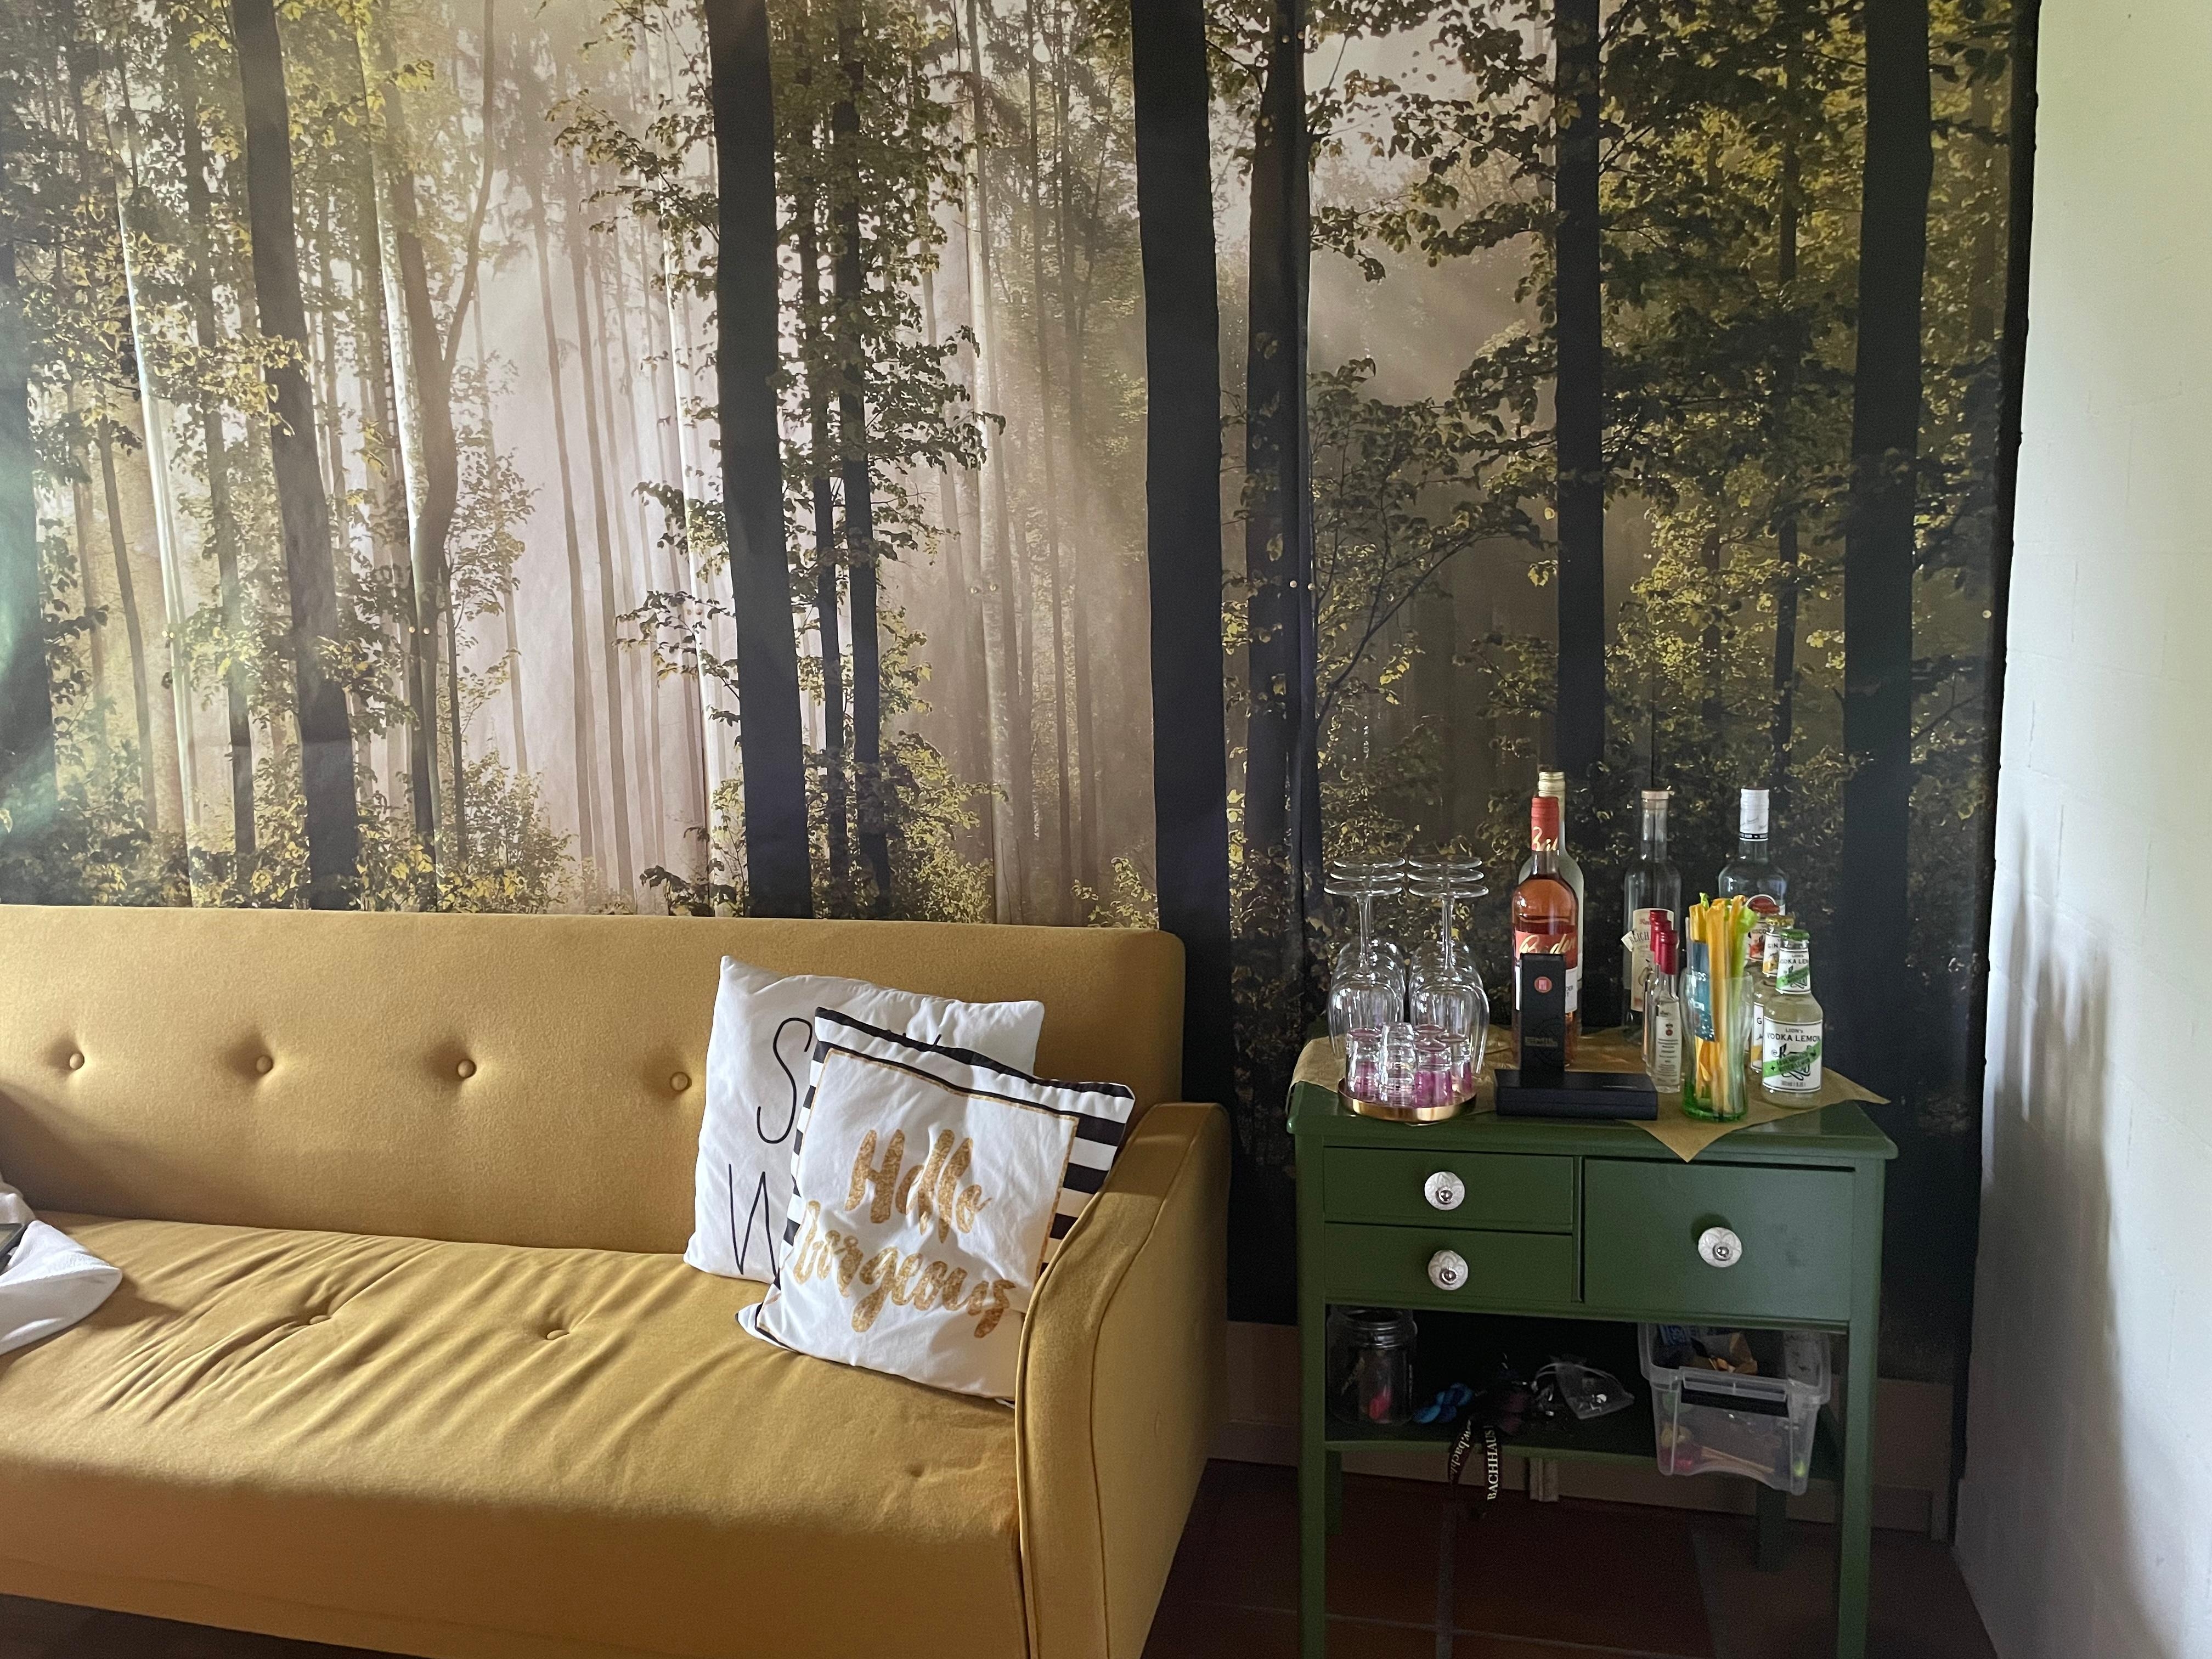 Neue Wohnung, neues Interior Design. ☺️ #wohnzimmer #bar #wallpaper #fototapete #couch #barregal #gelb #grün #interior 